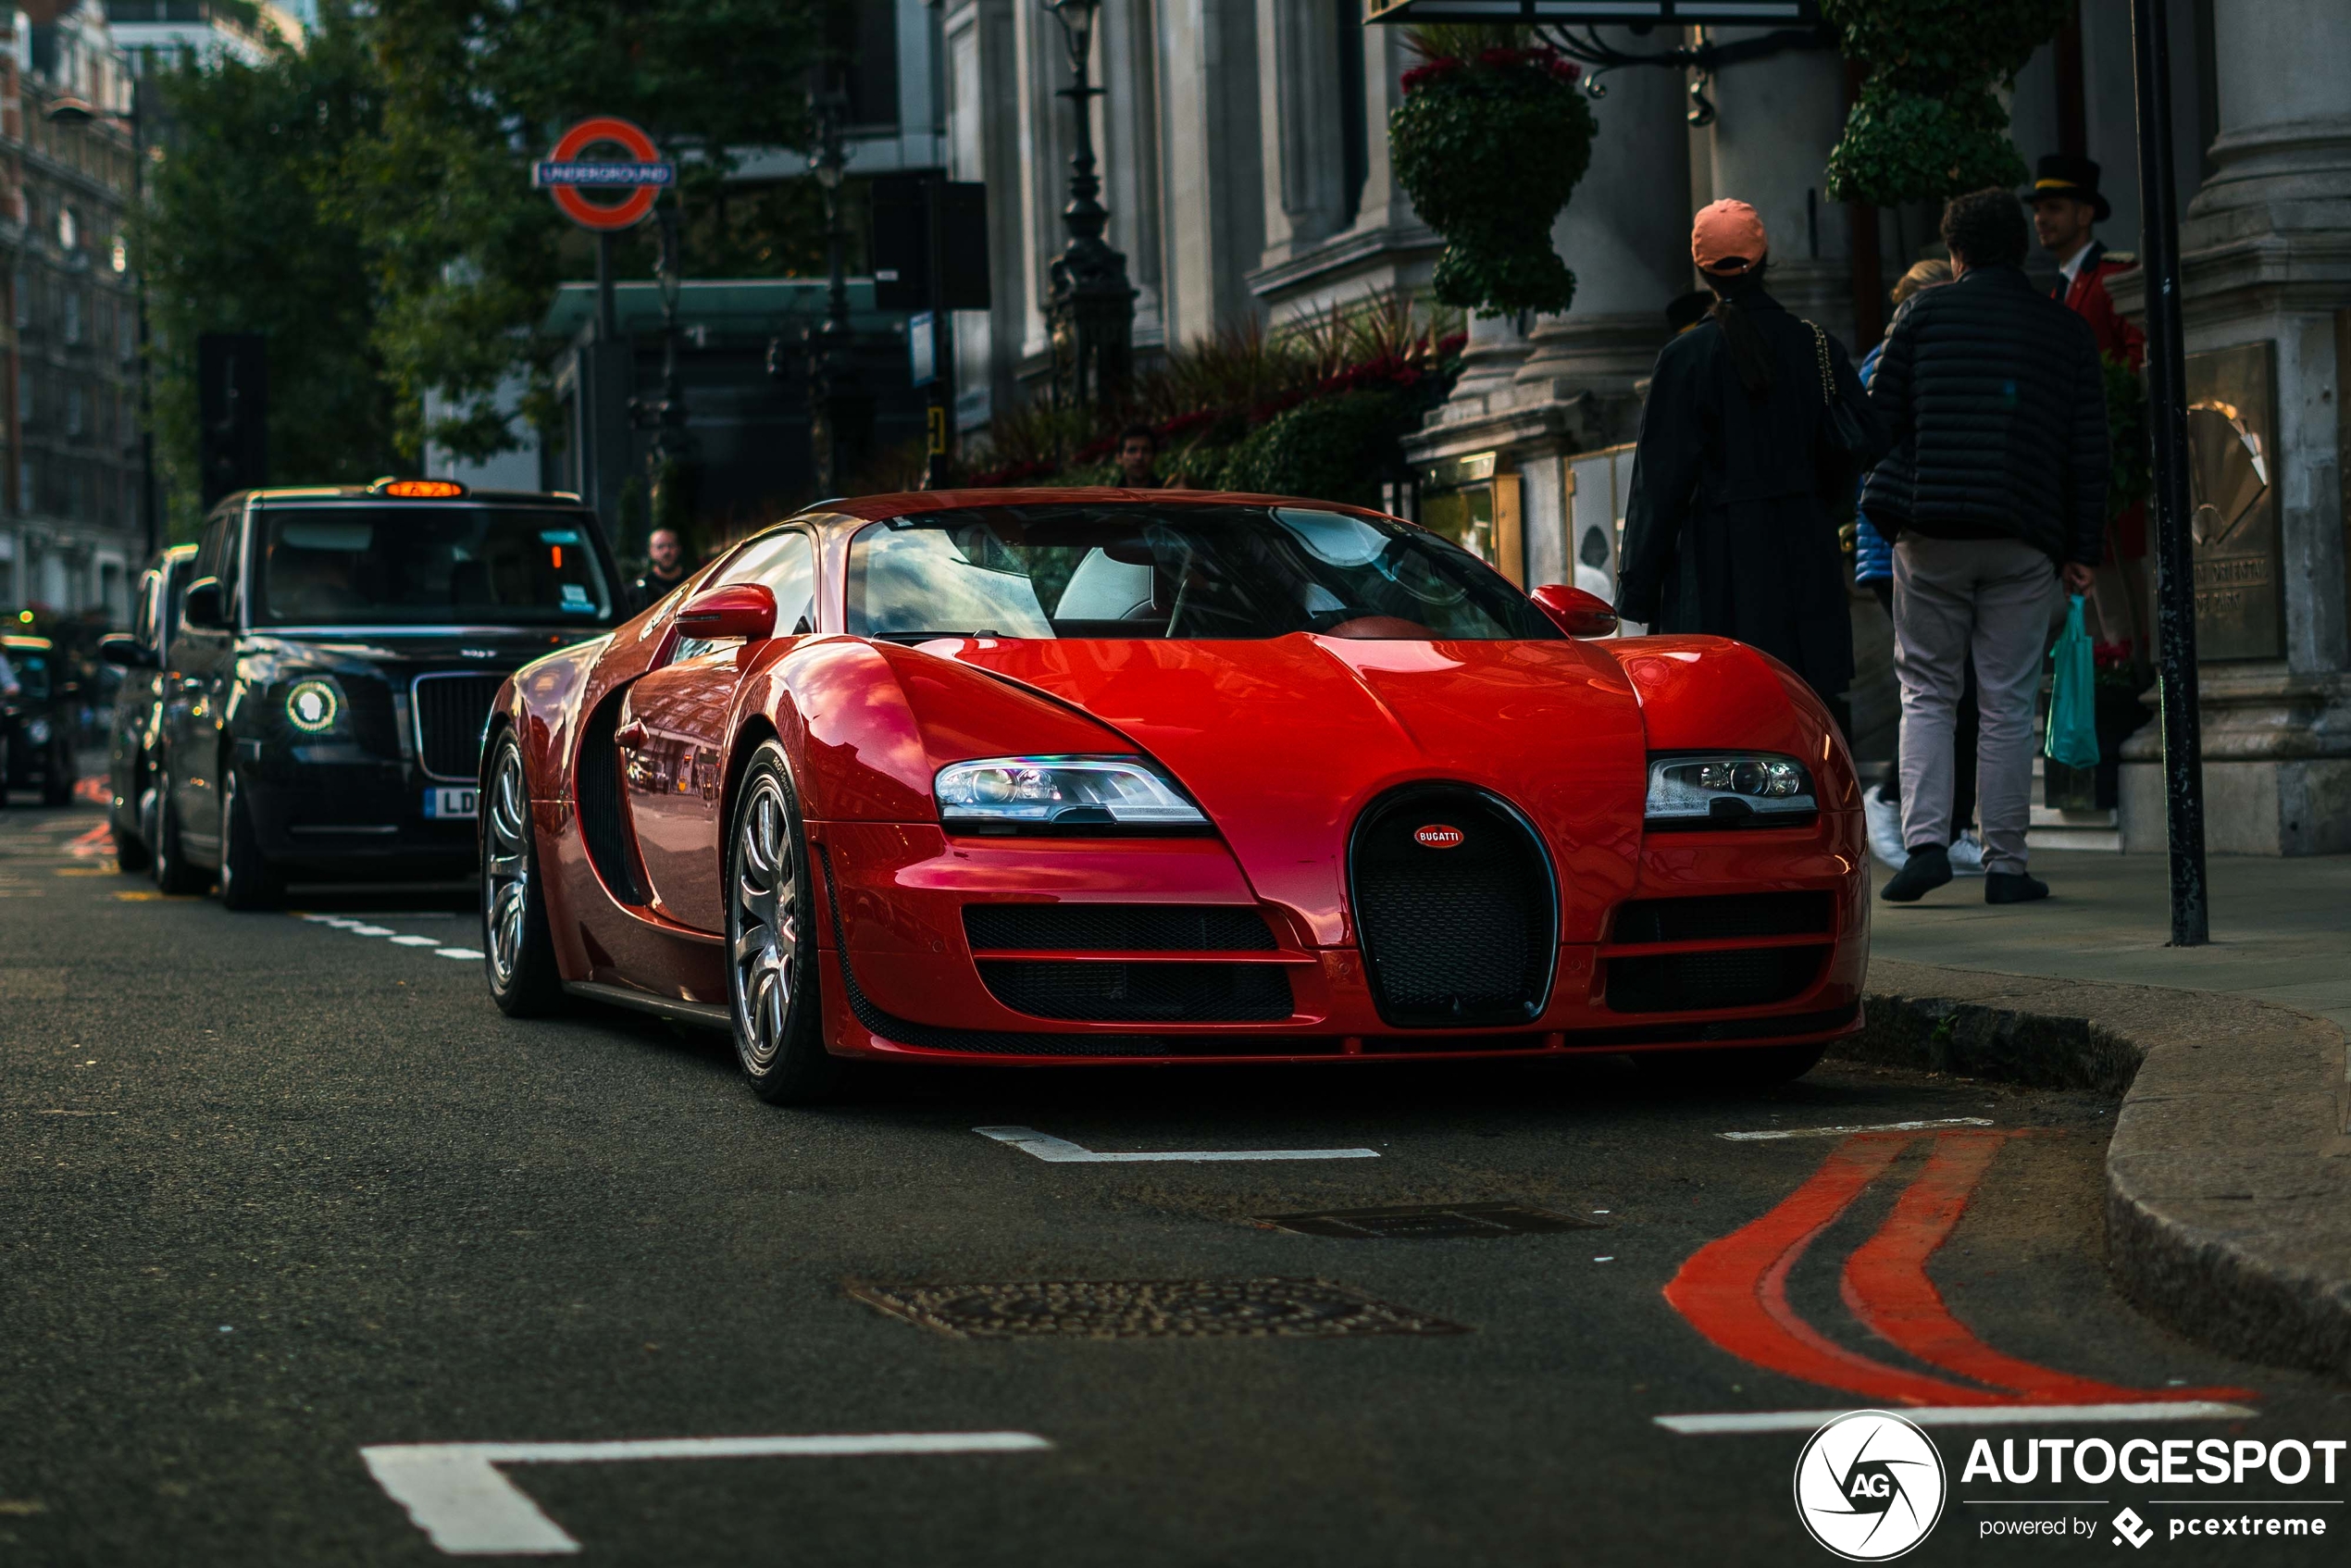 Londen verwelkomt nieuwe Bugatti Veyron 16.4